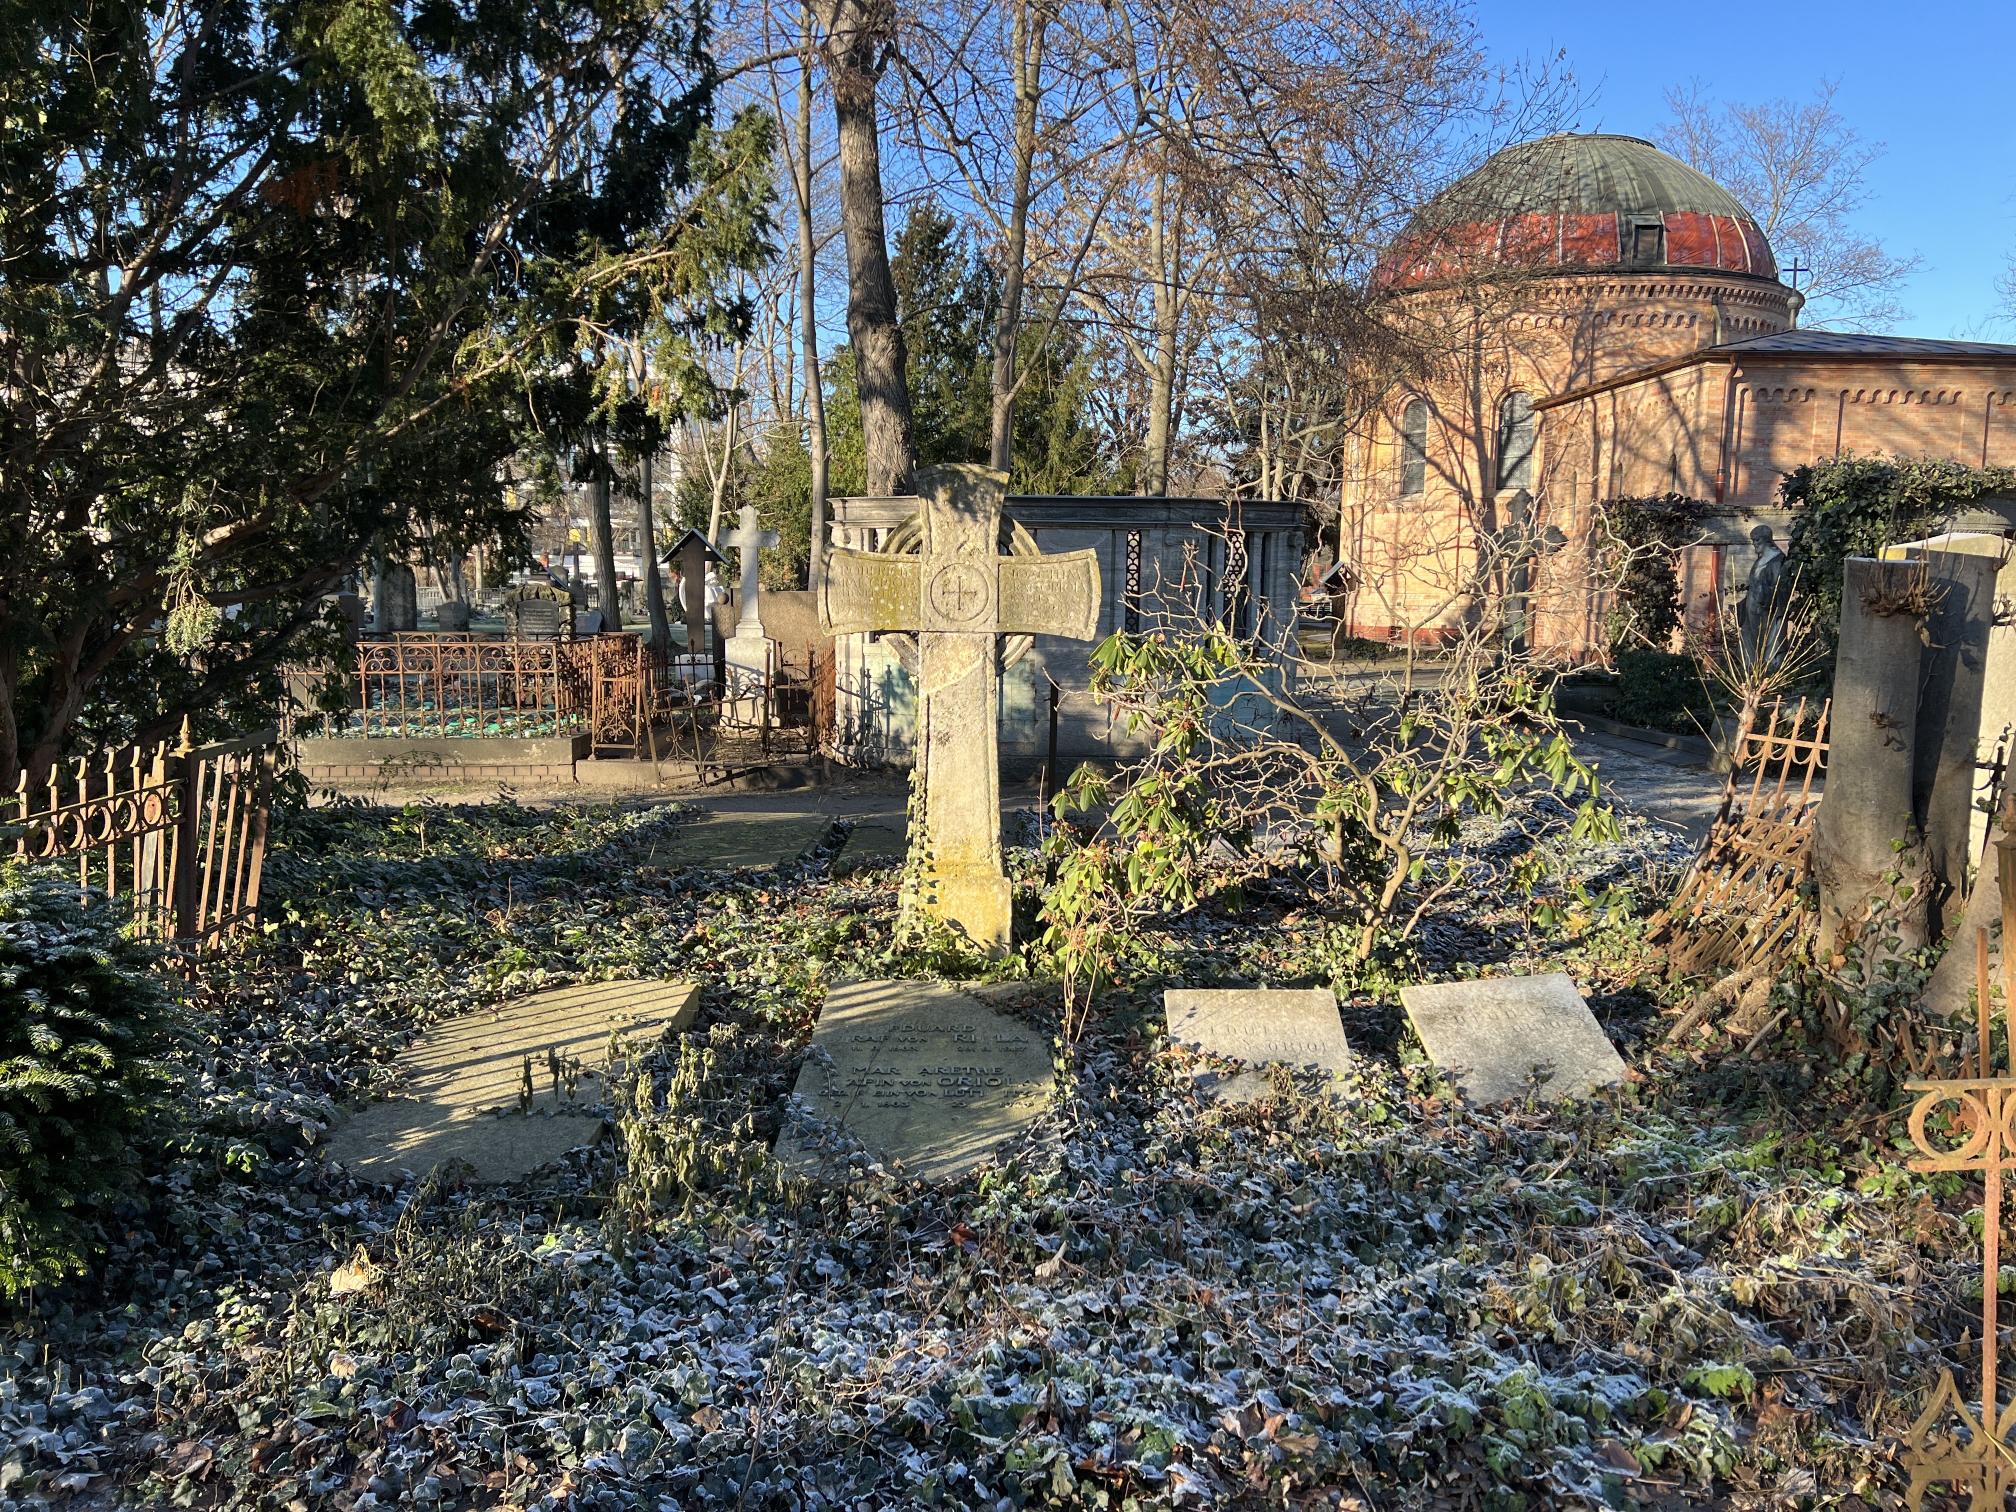 Grabstein Deodat Graf von Oriola, Alter Domfriedhof der St.-Hedwigs-Gemeinde, Berlin-Mitte